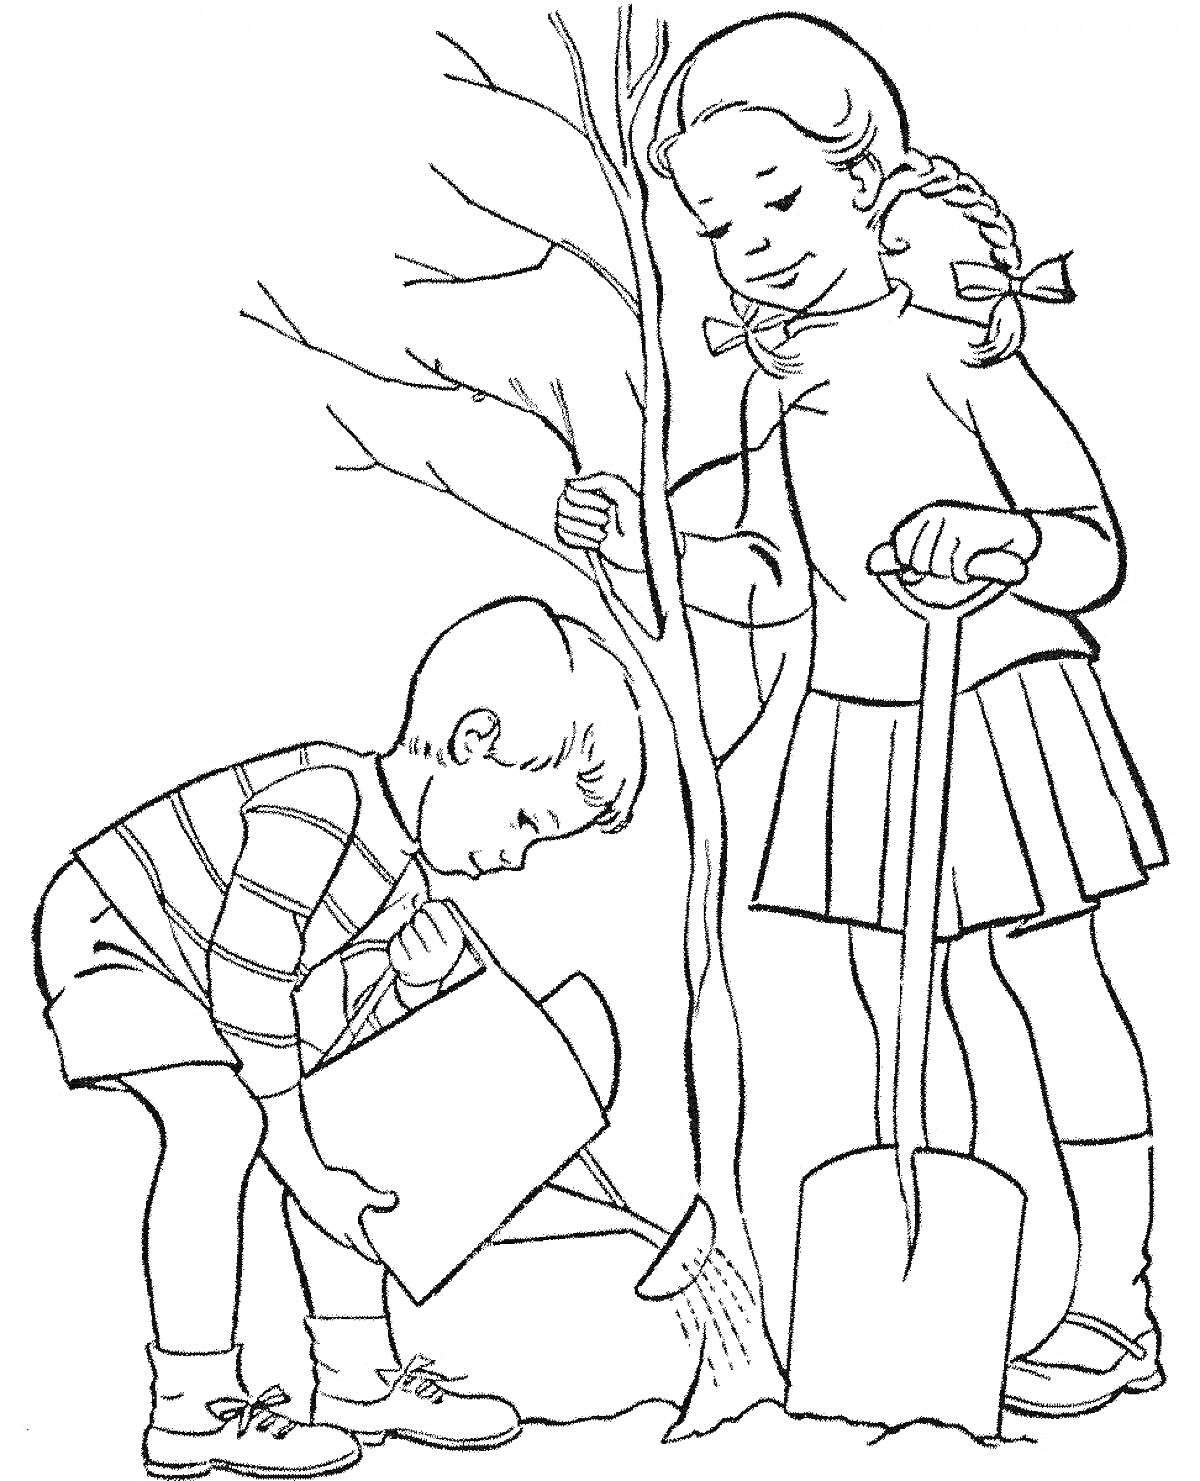 Раскраска Девочка и мальчик сажают дерево (девочка держит лопату, мальчик поливает саженец)